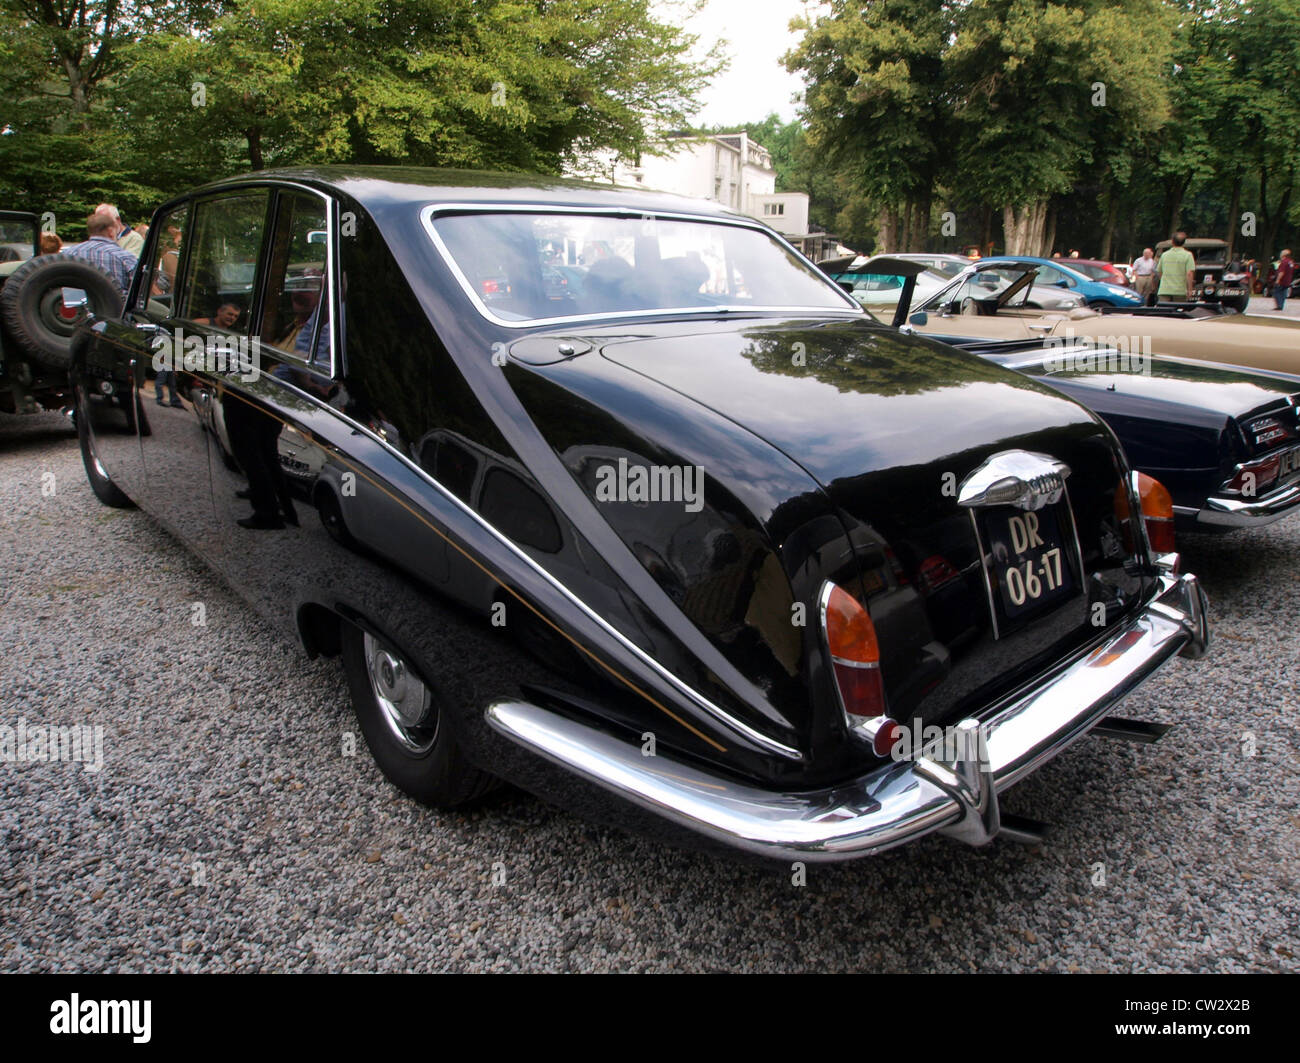 Daimler Limousine (1972) Stock Photo